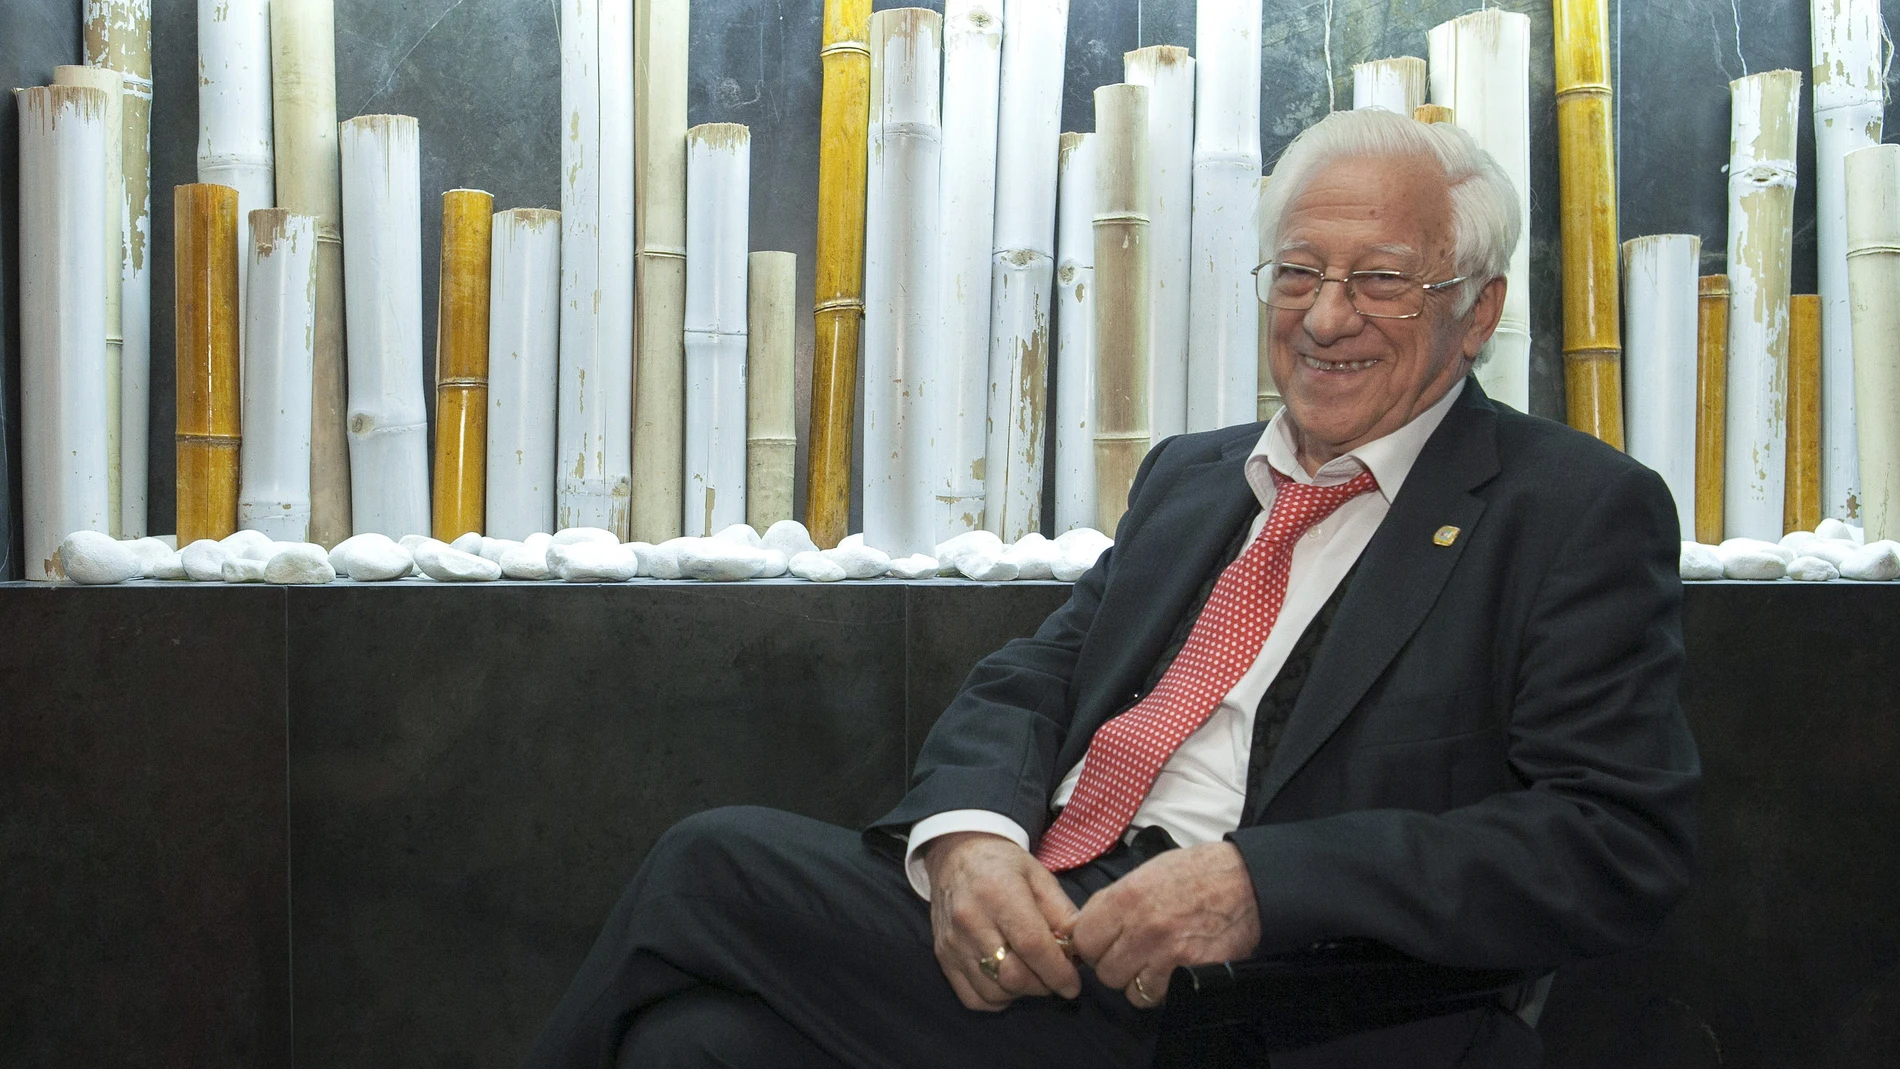 El padre Ángel, Premio Príncipe de Asturias de la Concordia en 1994, fundador y presidente de Mensajeros de la Paz